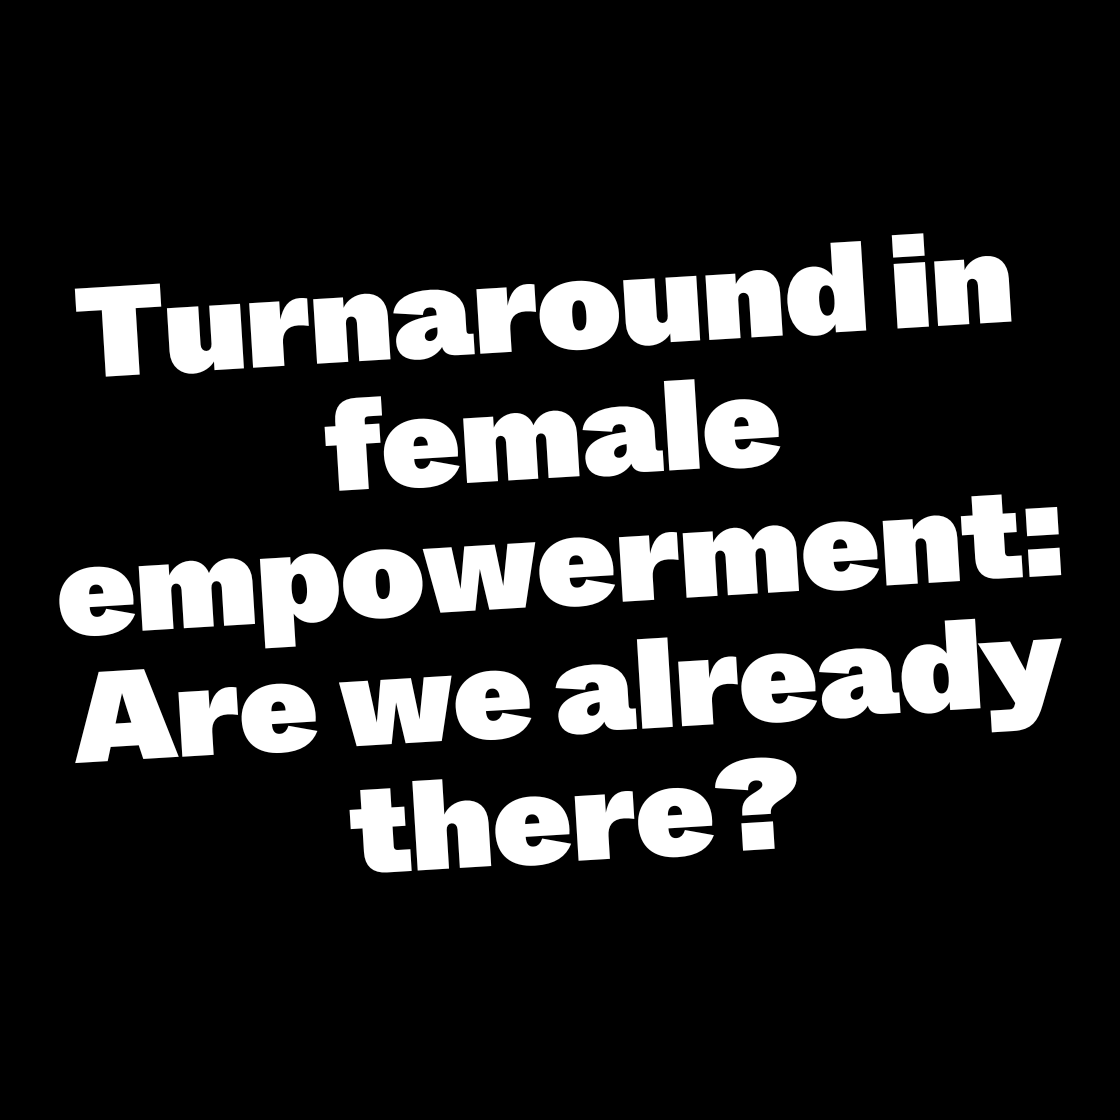 Turnaround in female empowerment